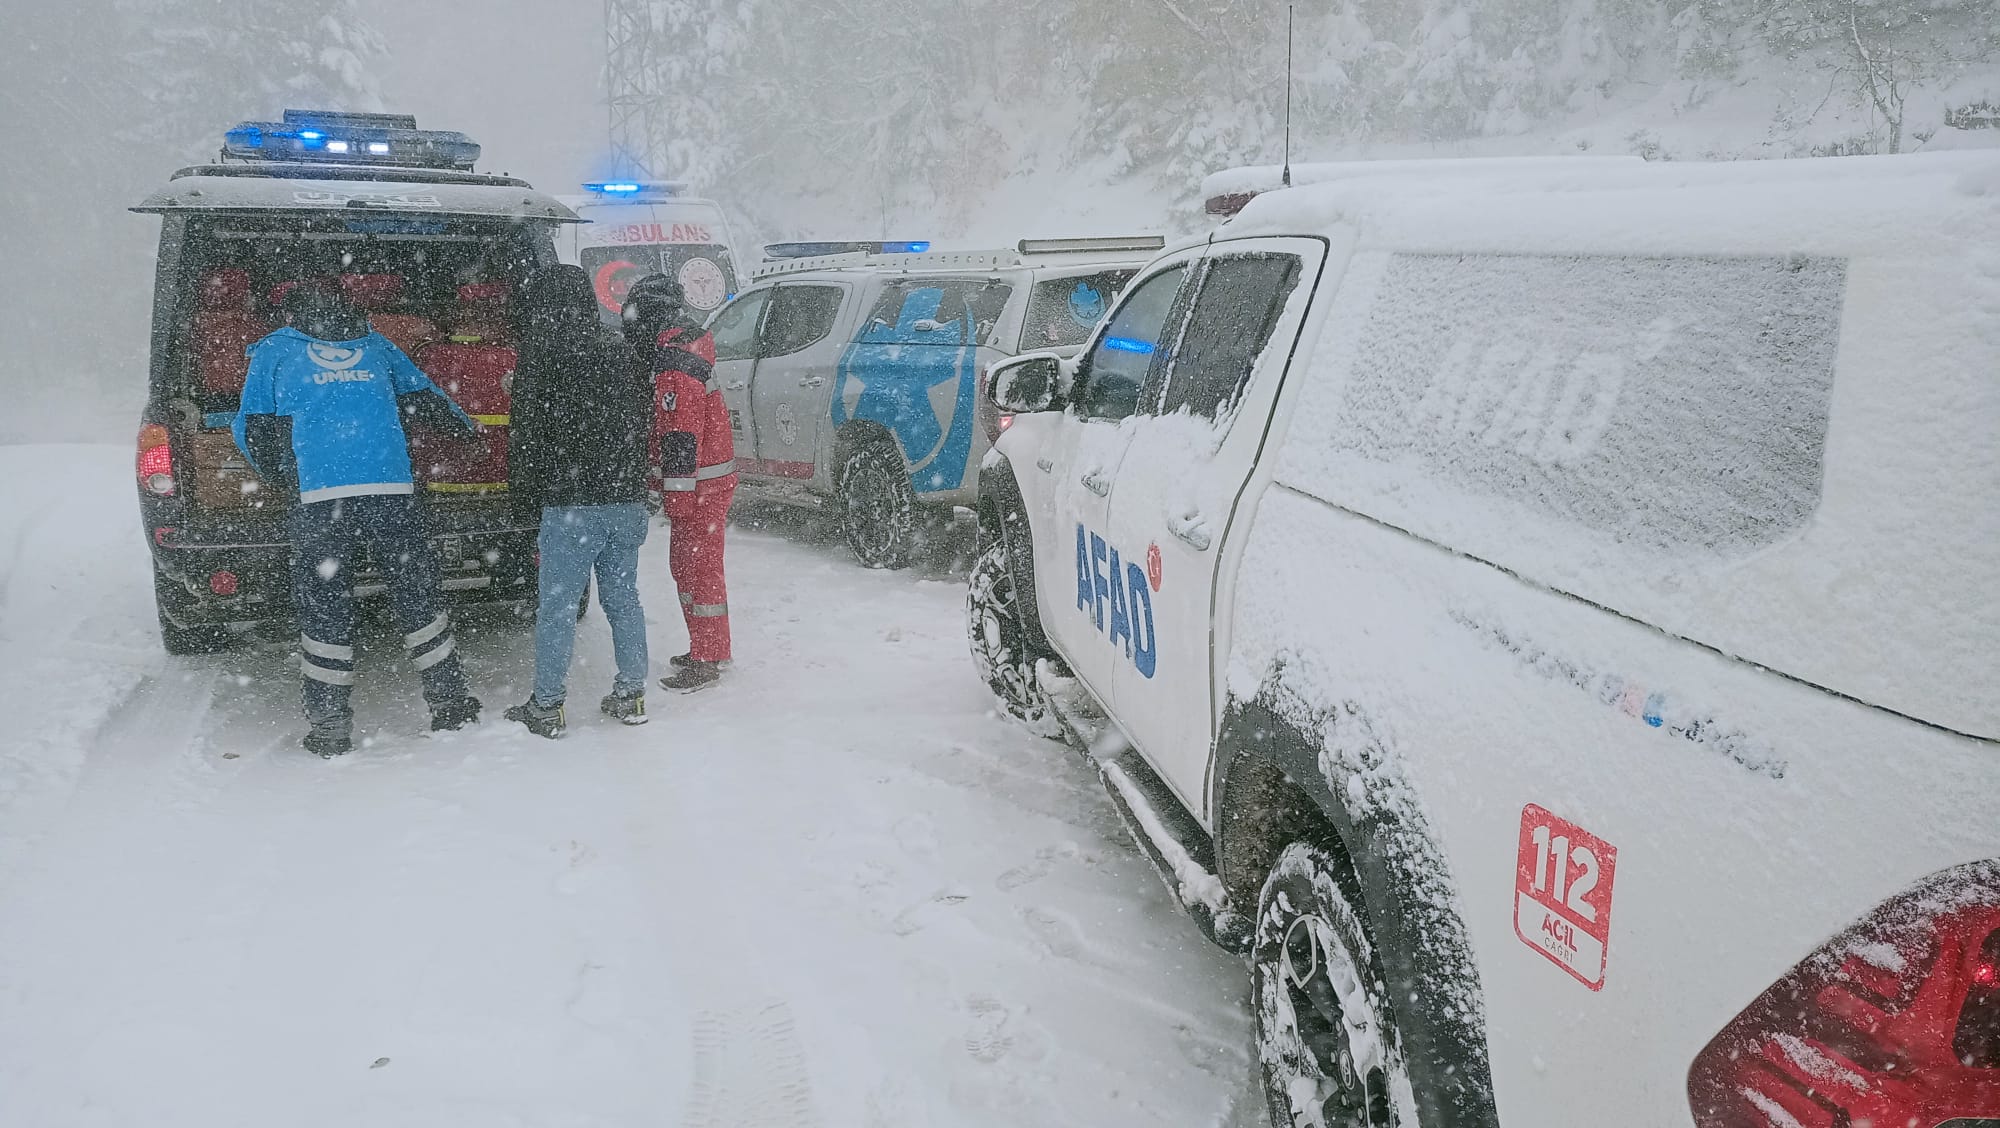 Bolu’da kar nedeniyle mahsur kalan 20 kampçı ve 6 çalışan, başarılı bir kurtarma operasyonuyla güvende.